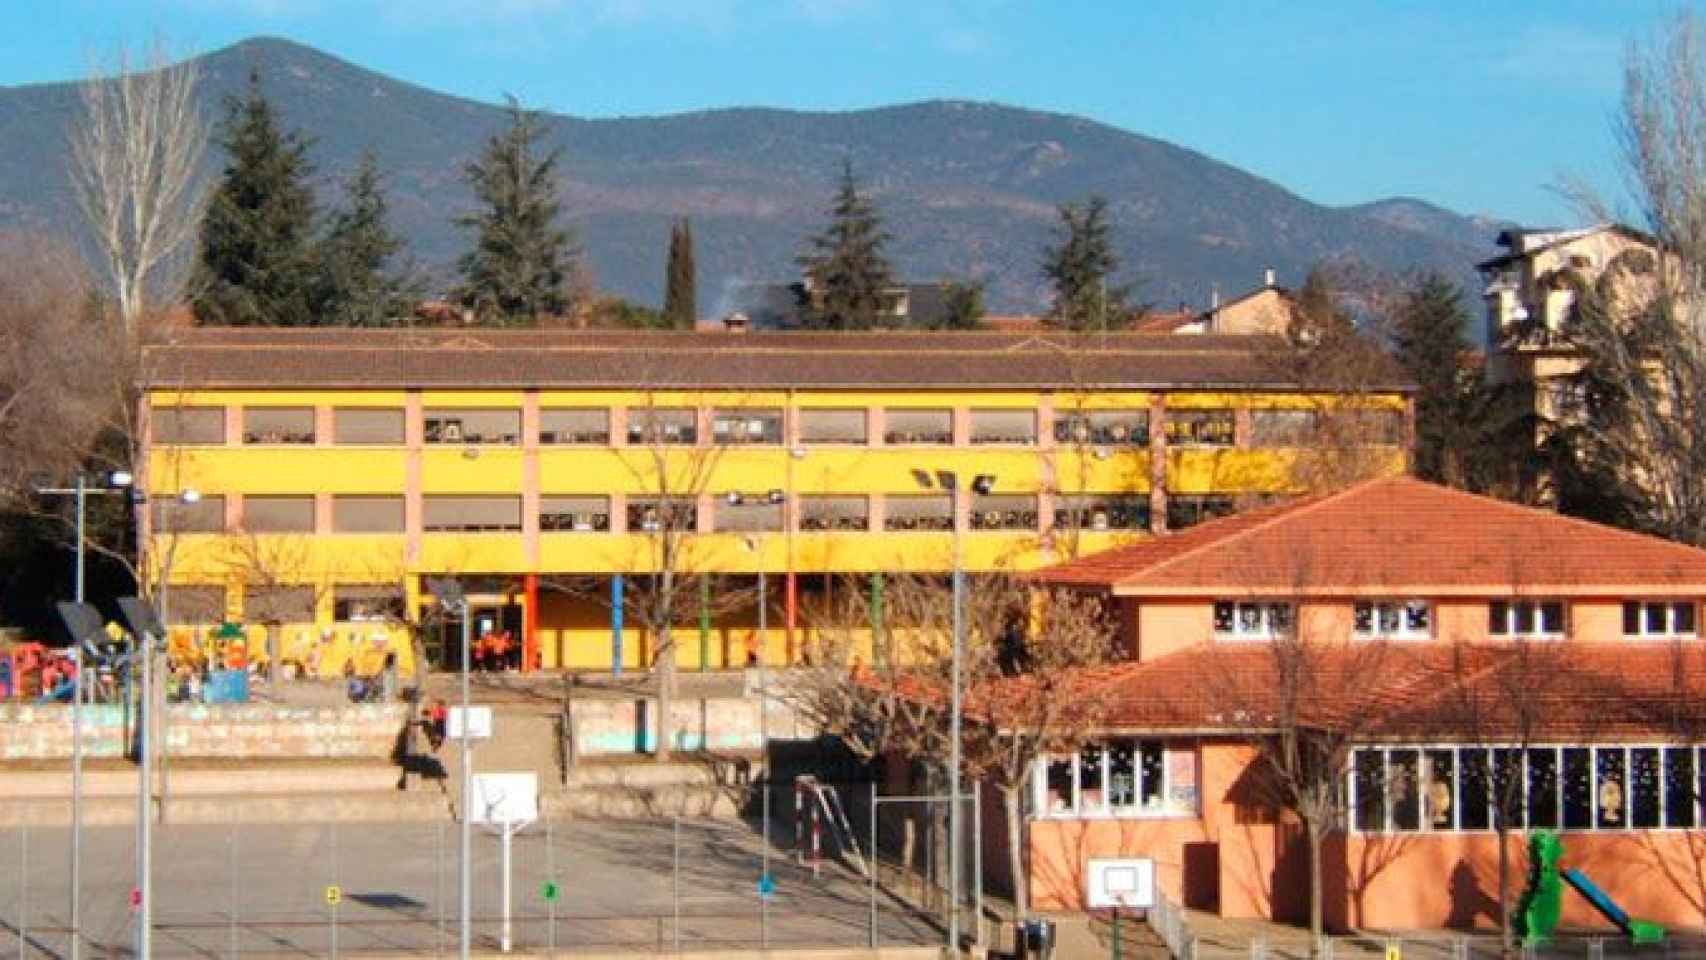 El exterior de la escuela Mossèn Albert Vives de La Seu d'Urgell, del que dos profesoras son investigadas por presuntos delitos de odio / CG